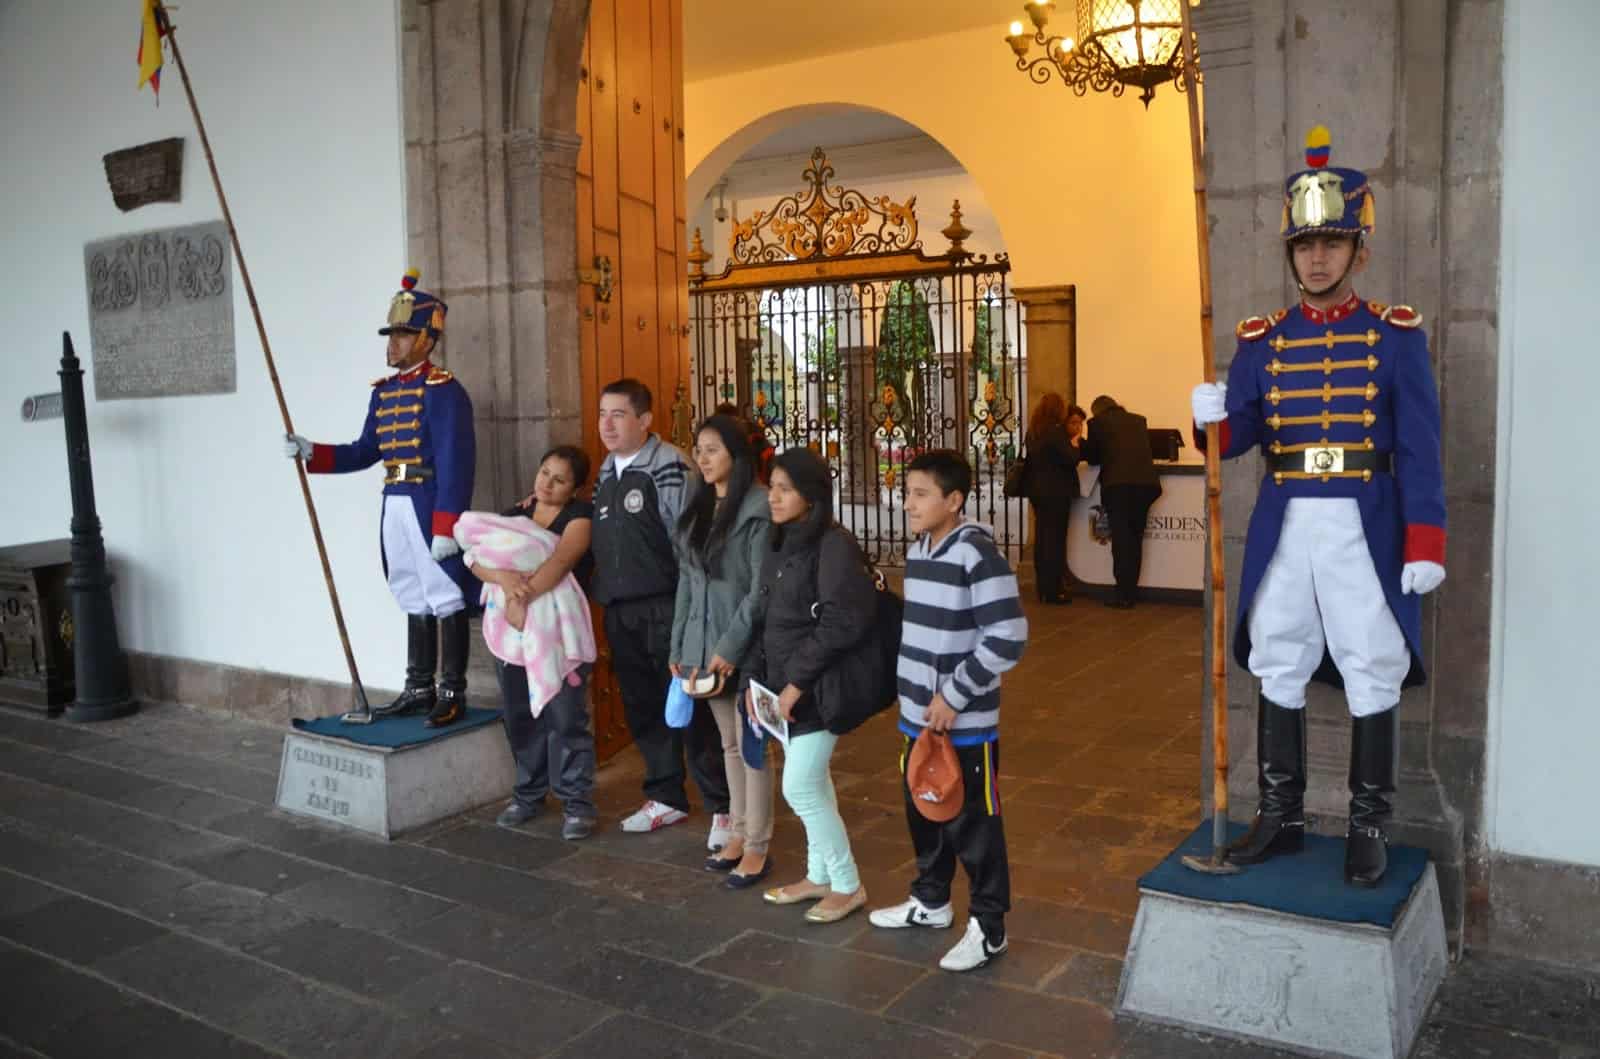 Guards at Palacio de Carondelet on Plaza Grande in Quito, Ecuador